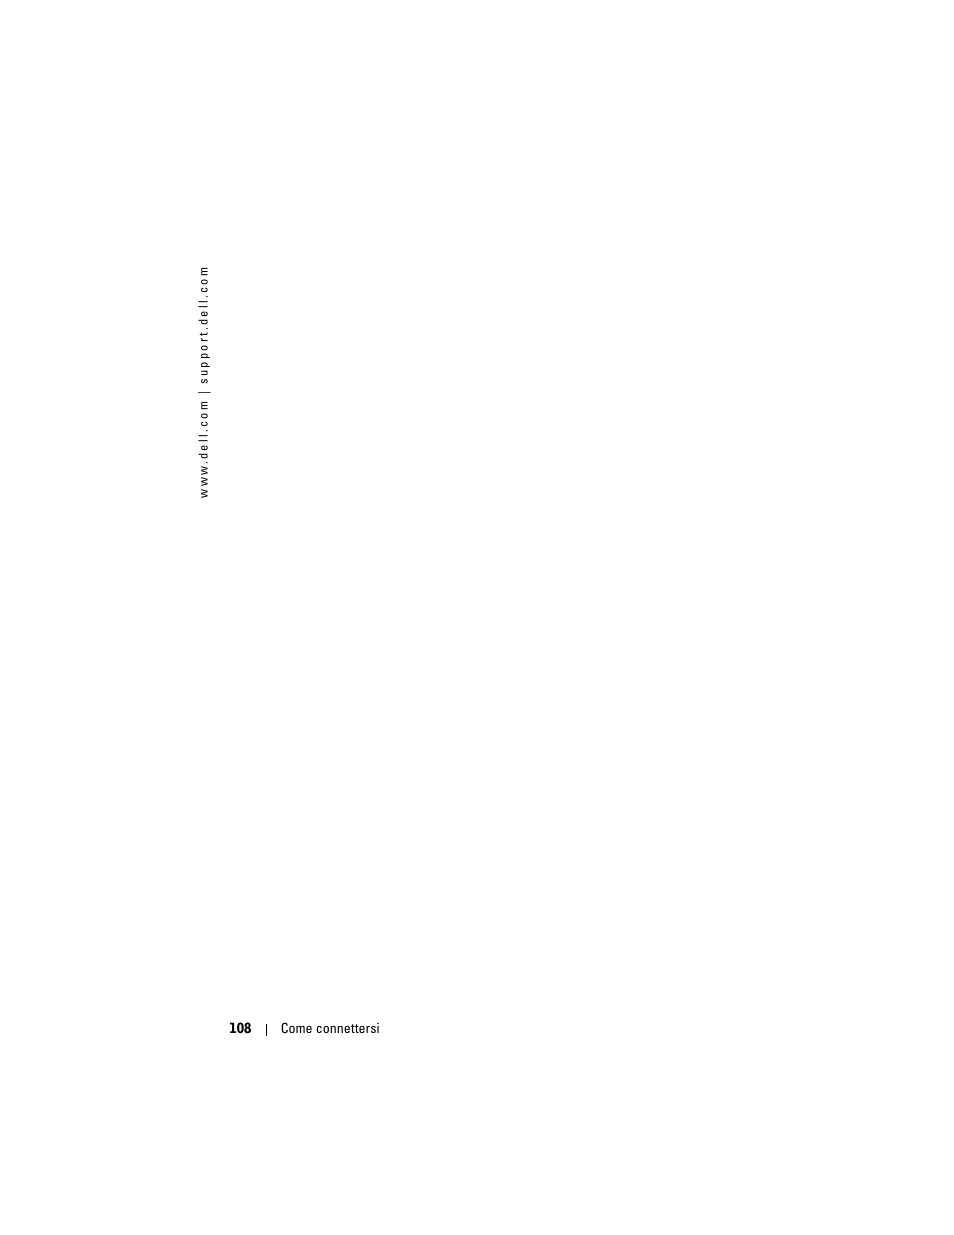 Dell AXIM X3 Manuale d'uso | Pagina 108 / 154